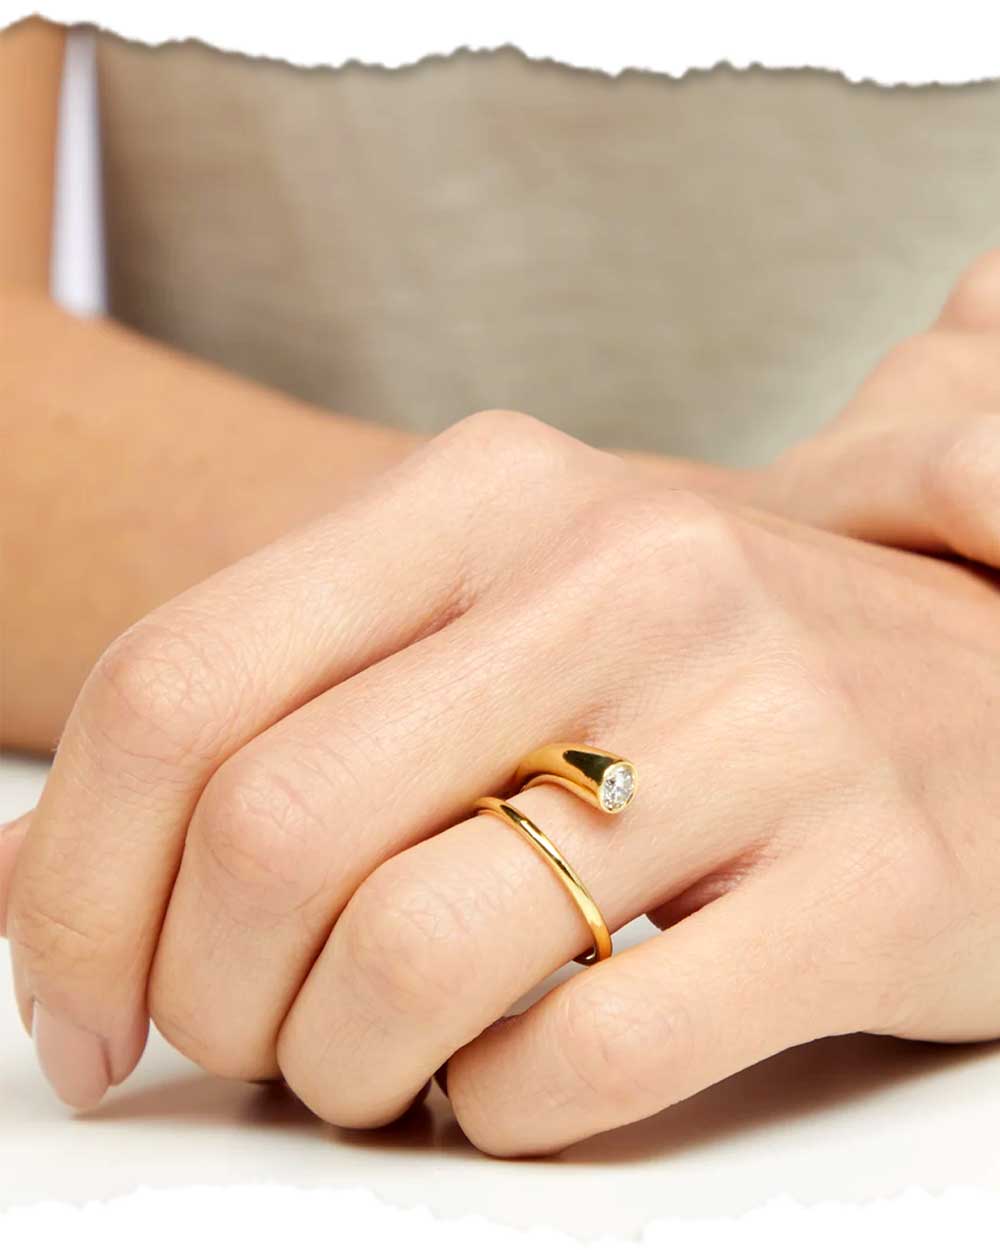 Unique design engagement ring